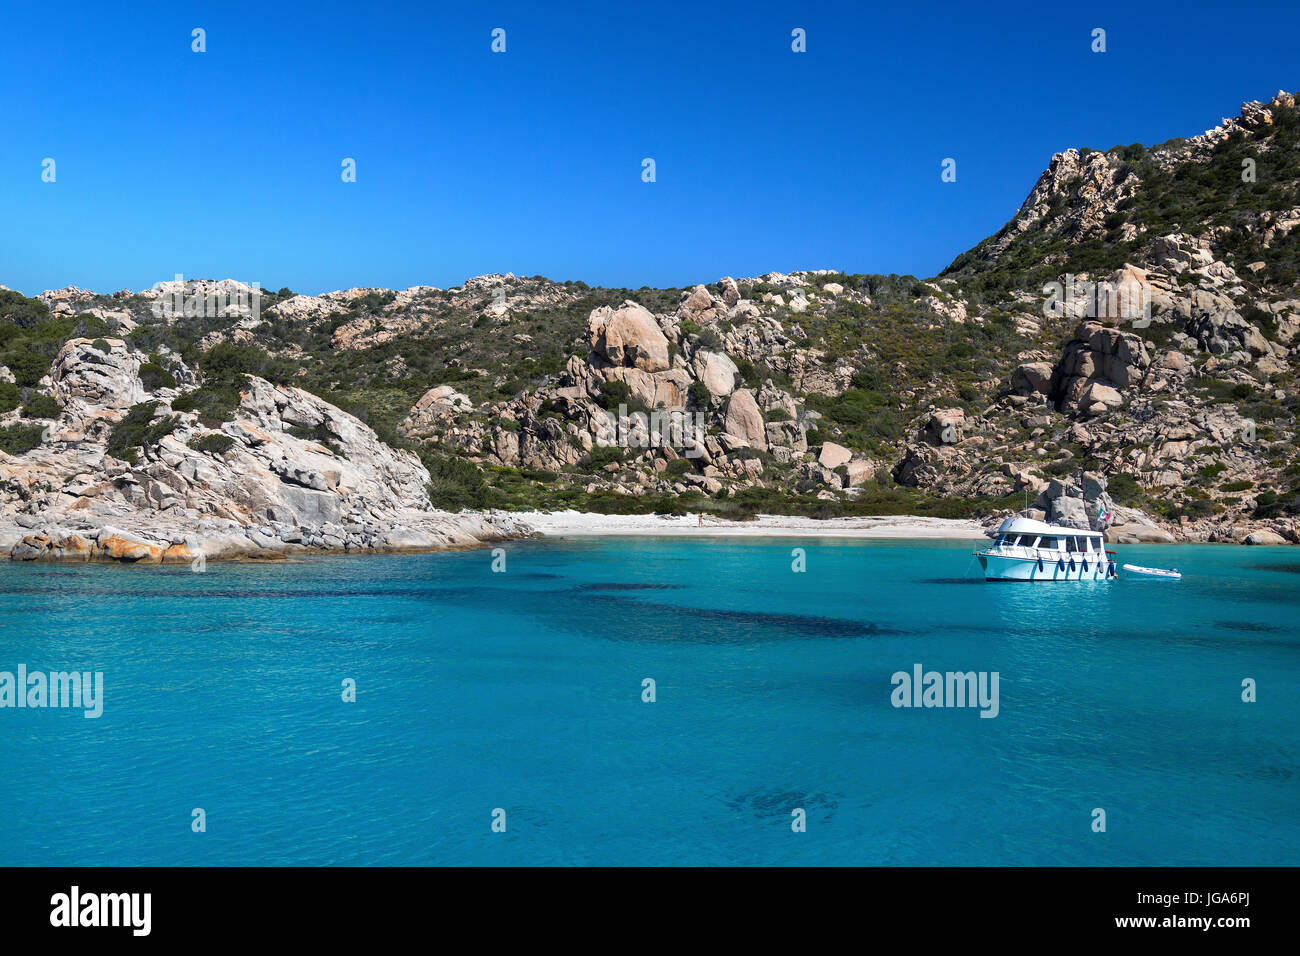 Das Maddalena-Archipel - eine Gruppe von Inseln in der Straße von Bonifacio zwischen Korsika (Frankreich) und Nord-Ost-Sardinien (Italien). Es besteht aus Stockfoto